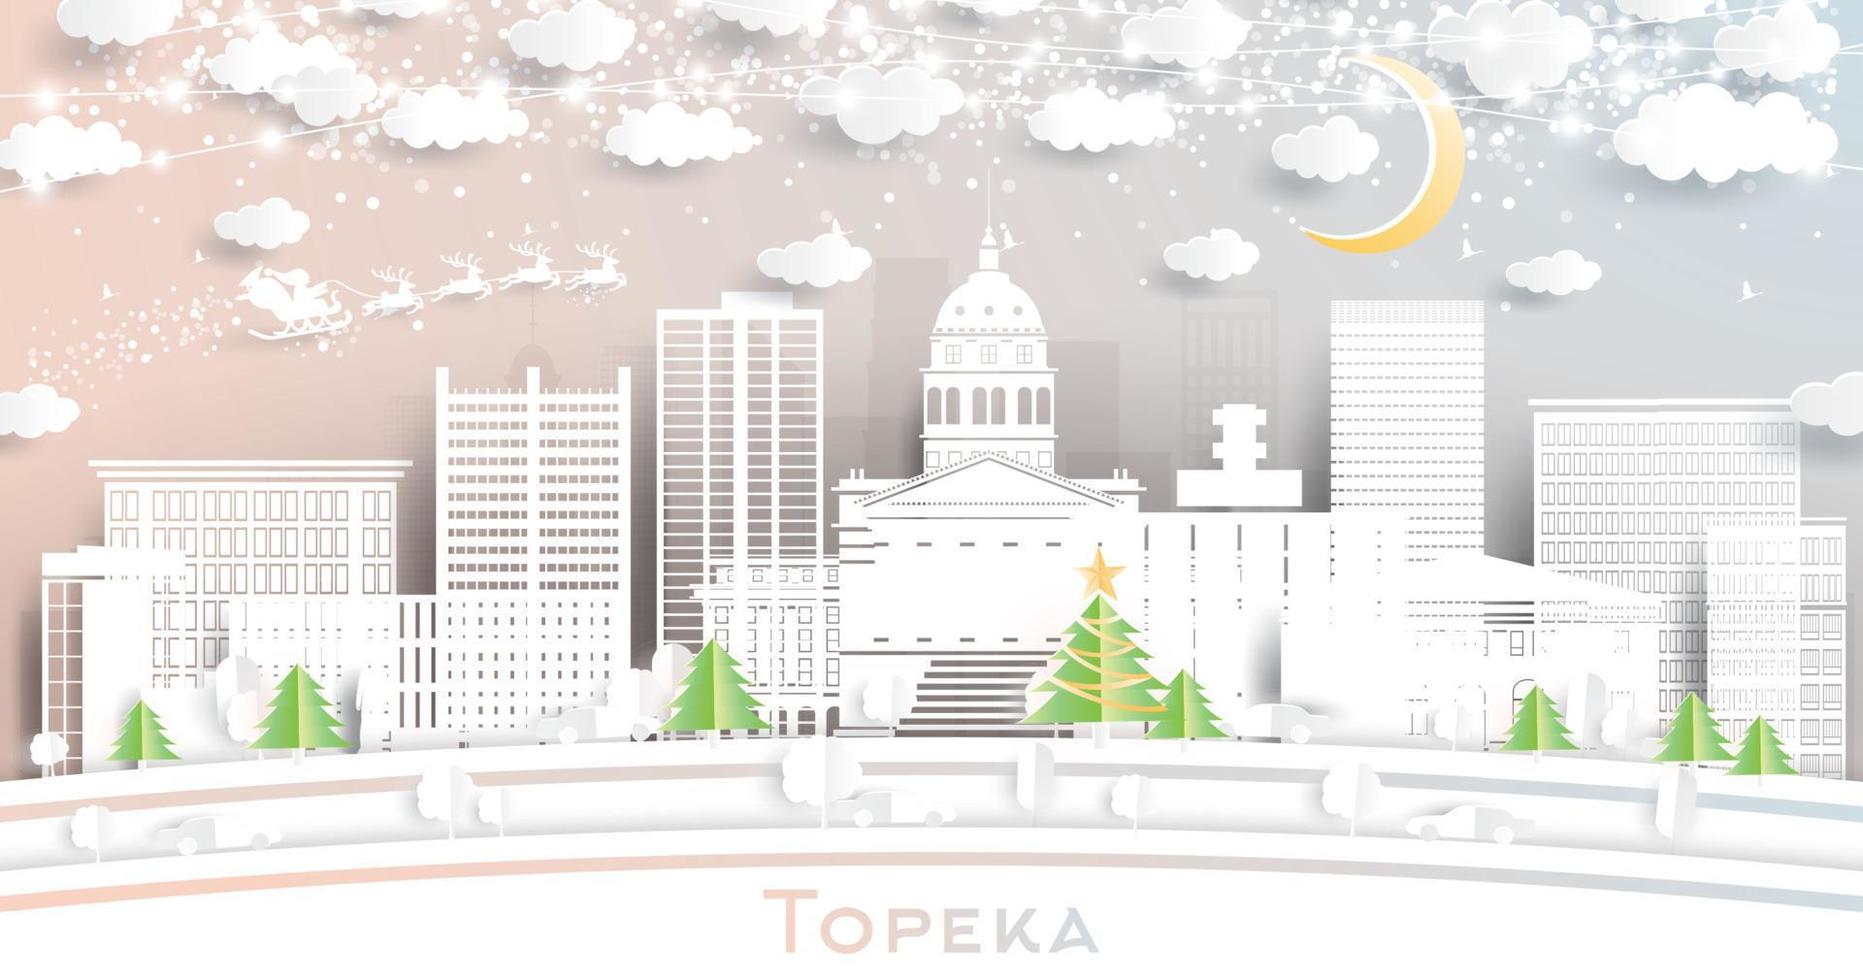 horizonte de la ciudad de topeka kansas usa en estilo de corte de papel con copos de nieve, luna y guirnalda de neón. vector